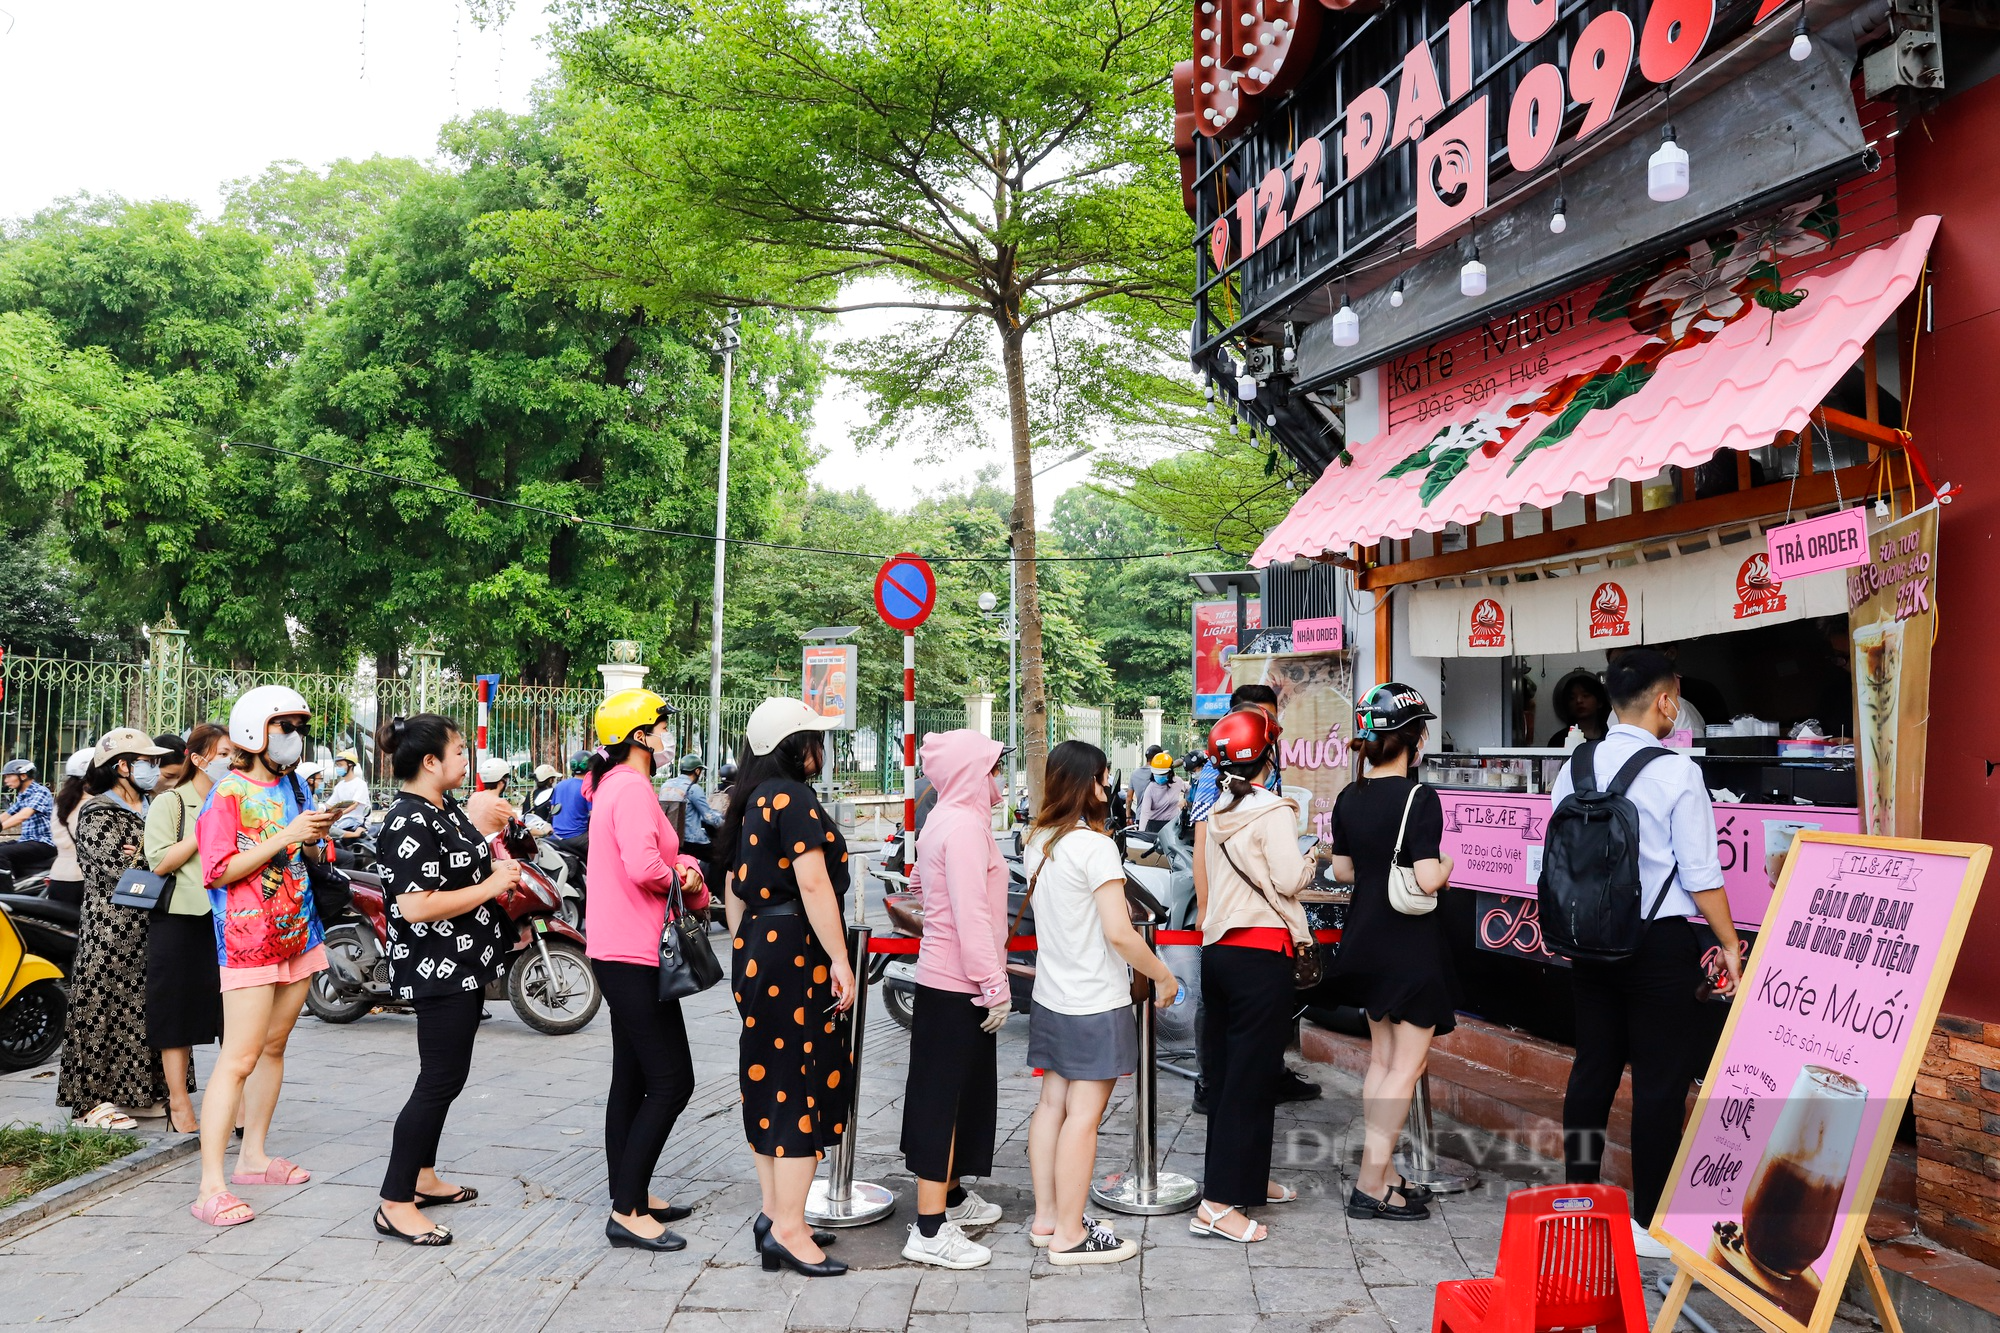 Cà phê muối đặc sản Huế đổ bộ Hà Nội, chủ quán mỏi tay bán hơn 1000 cốc/ngày - Ảnh 1.